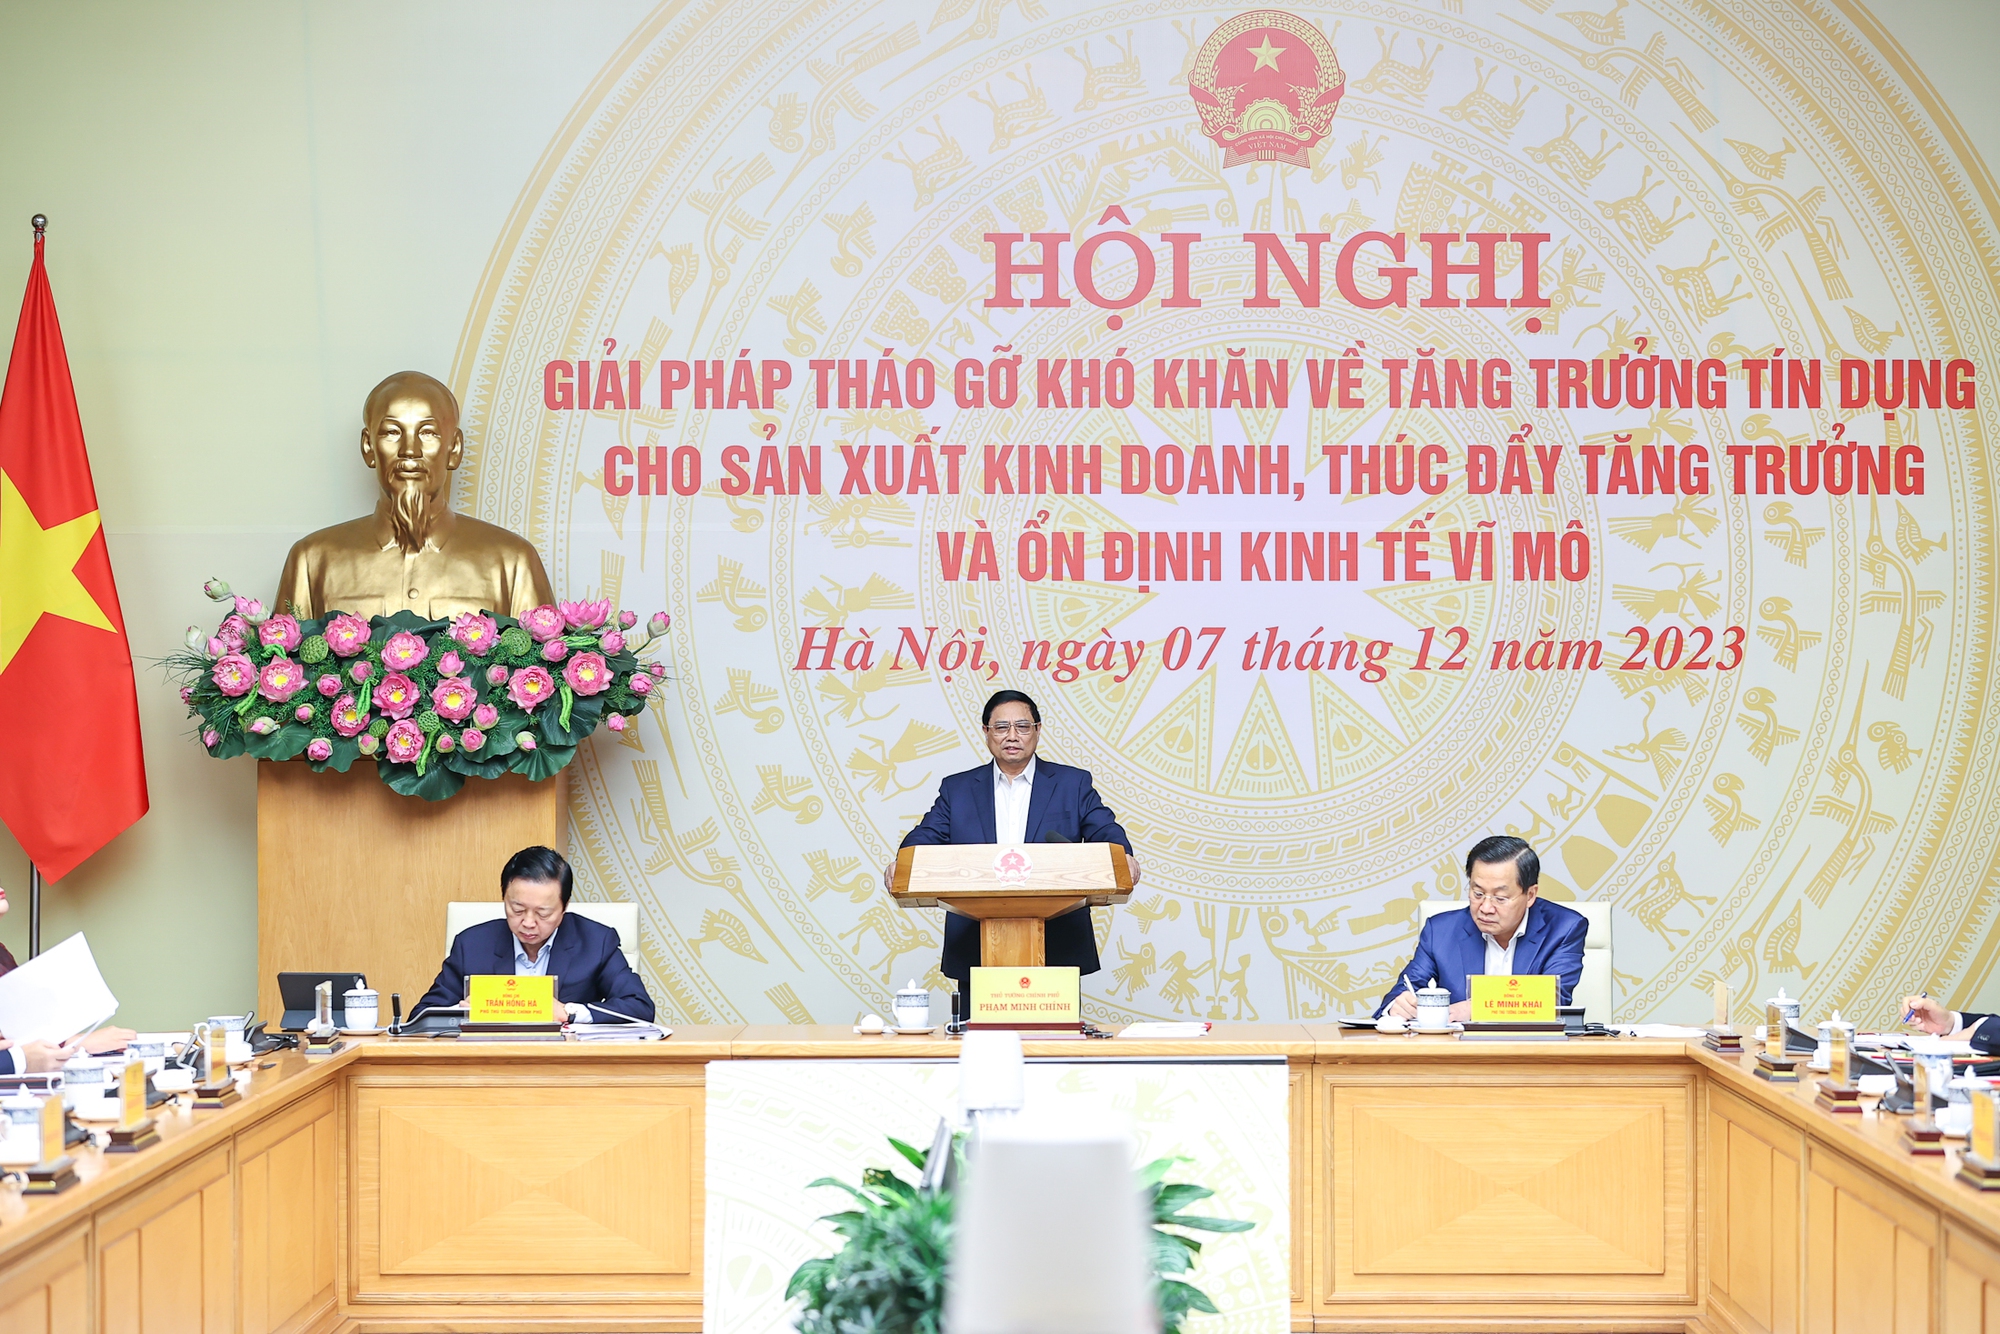 Thủ tướng Phạm Minh Chính chủ trì Hội nghị bàn giải pháp tháo gỡ khó khăn về tăng trưởng tín dụng cho sản xuất, kinh doanh thúc đẩy tăng trưởng và ổn định kinh tế vĩ mô - Ảnh: VGP/Nhật Bắc